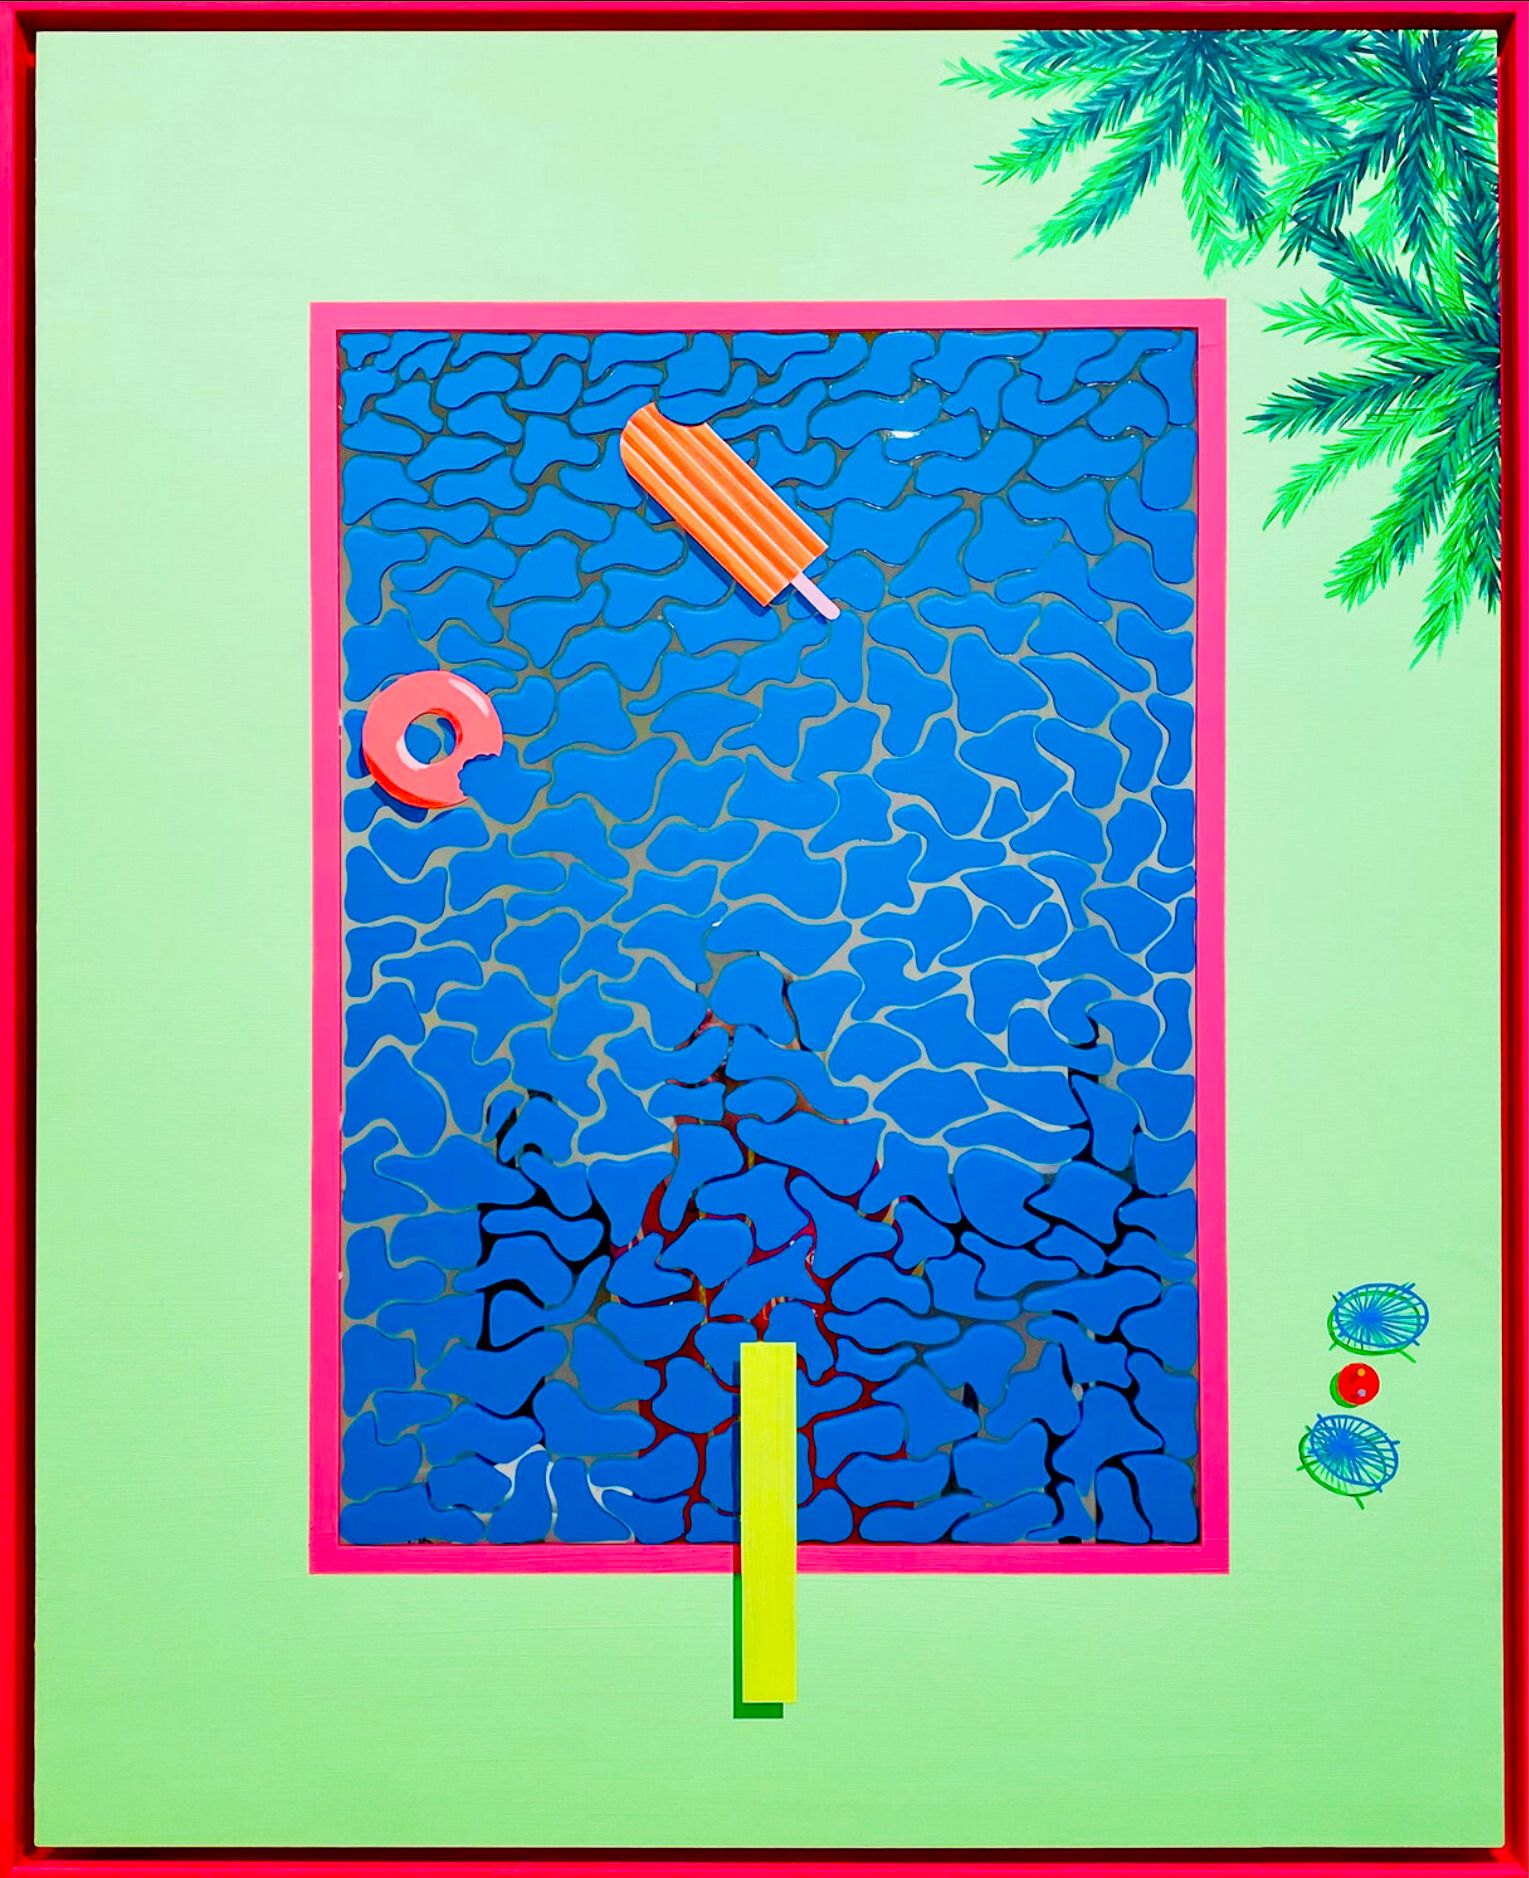 Isabelle Derecque, "Sunday at the pool" Pittura colorata, in una misteriosa piscina colorata, dipinta su specchio plexi in stile pop-up con colori allegri ed energici. Visualizzato attraverso geometrie, prospettive, contrasti e riflessi.